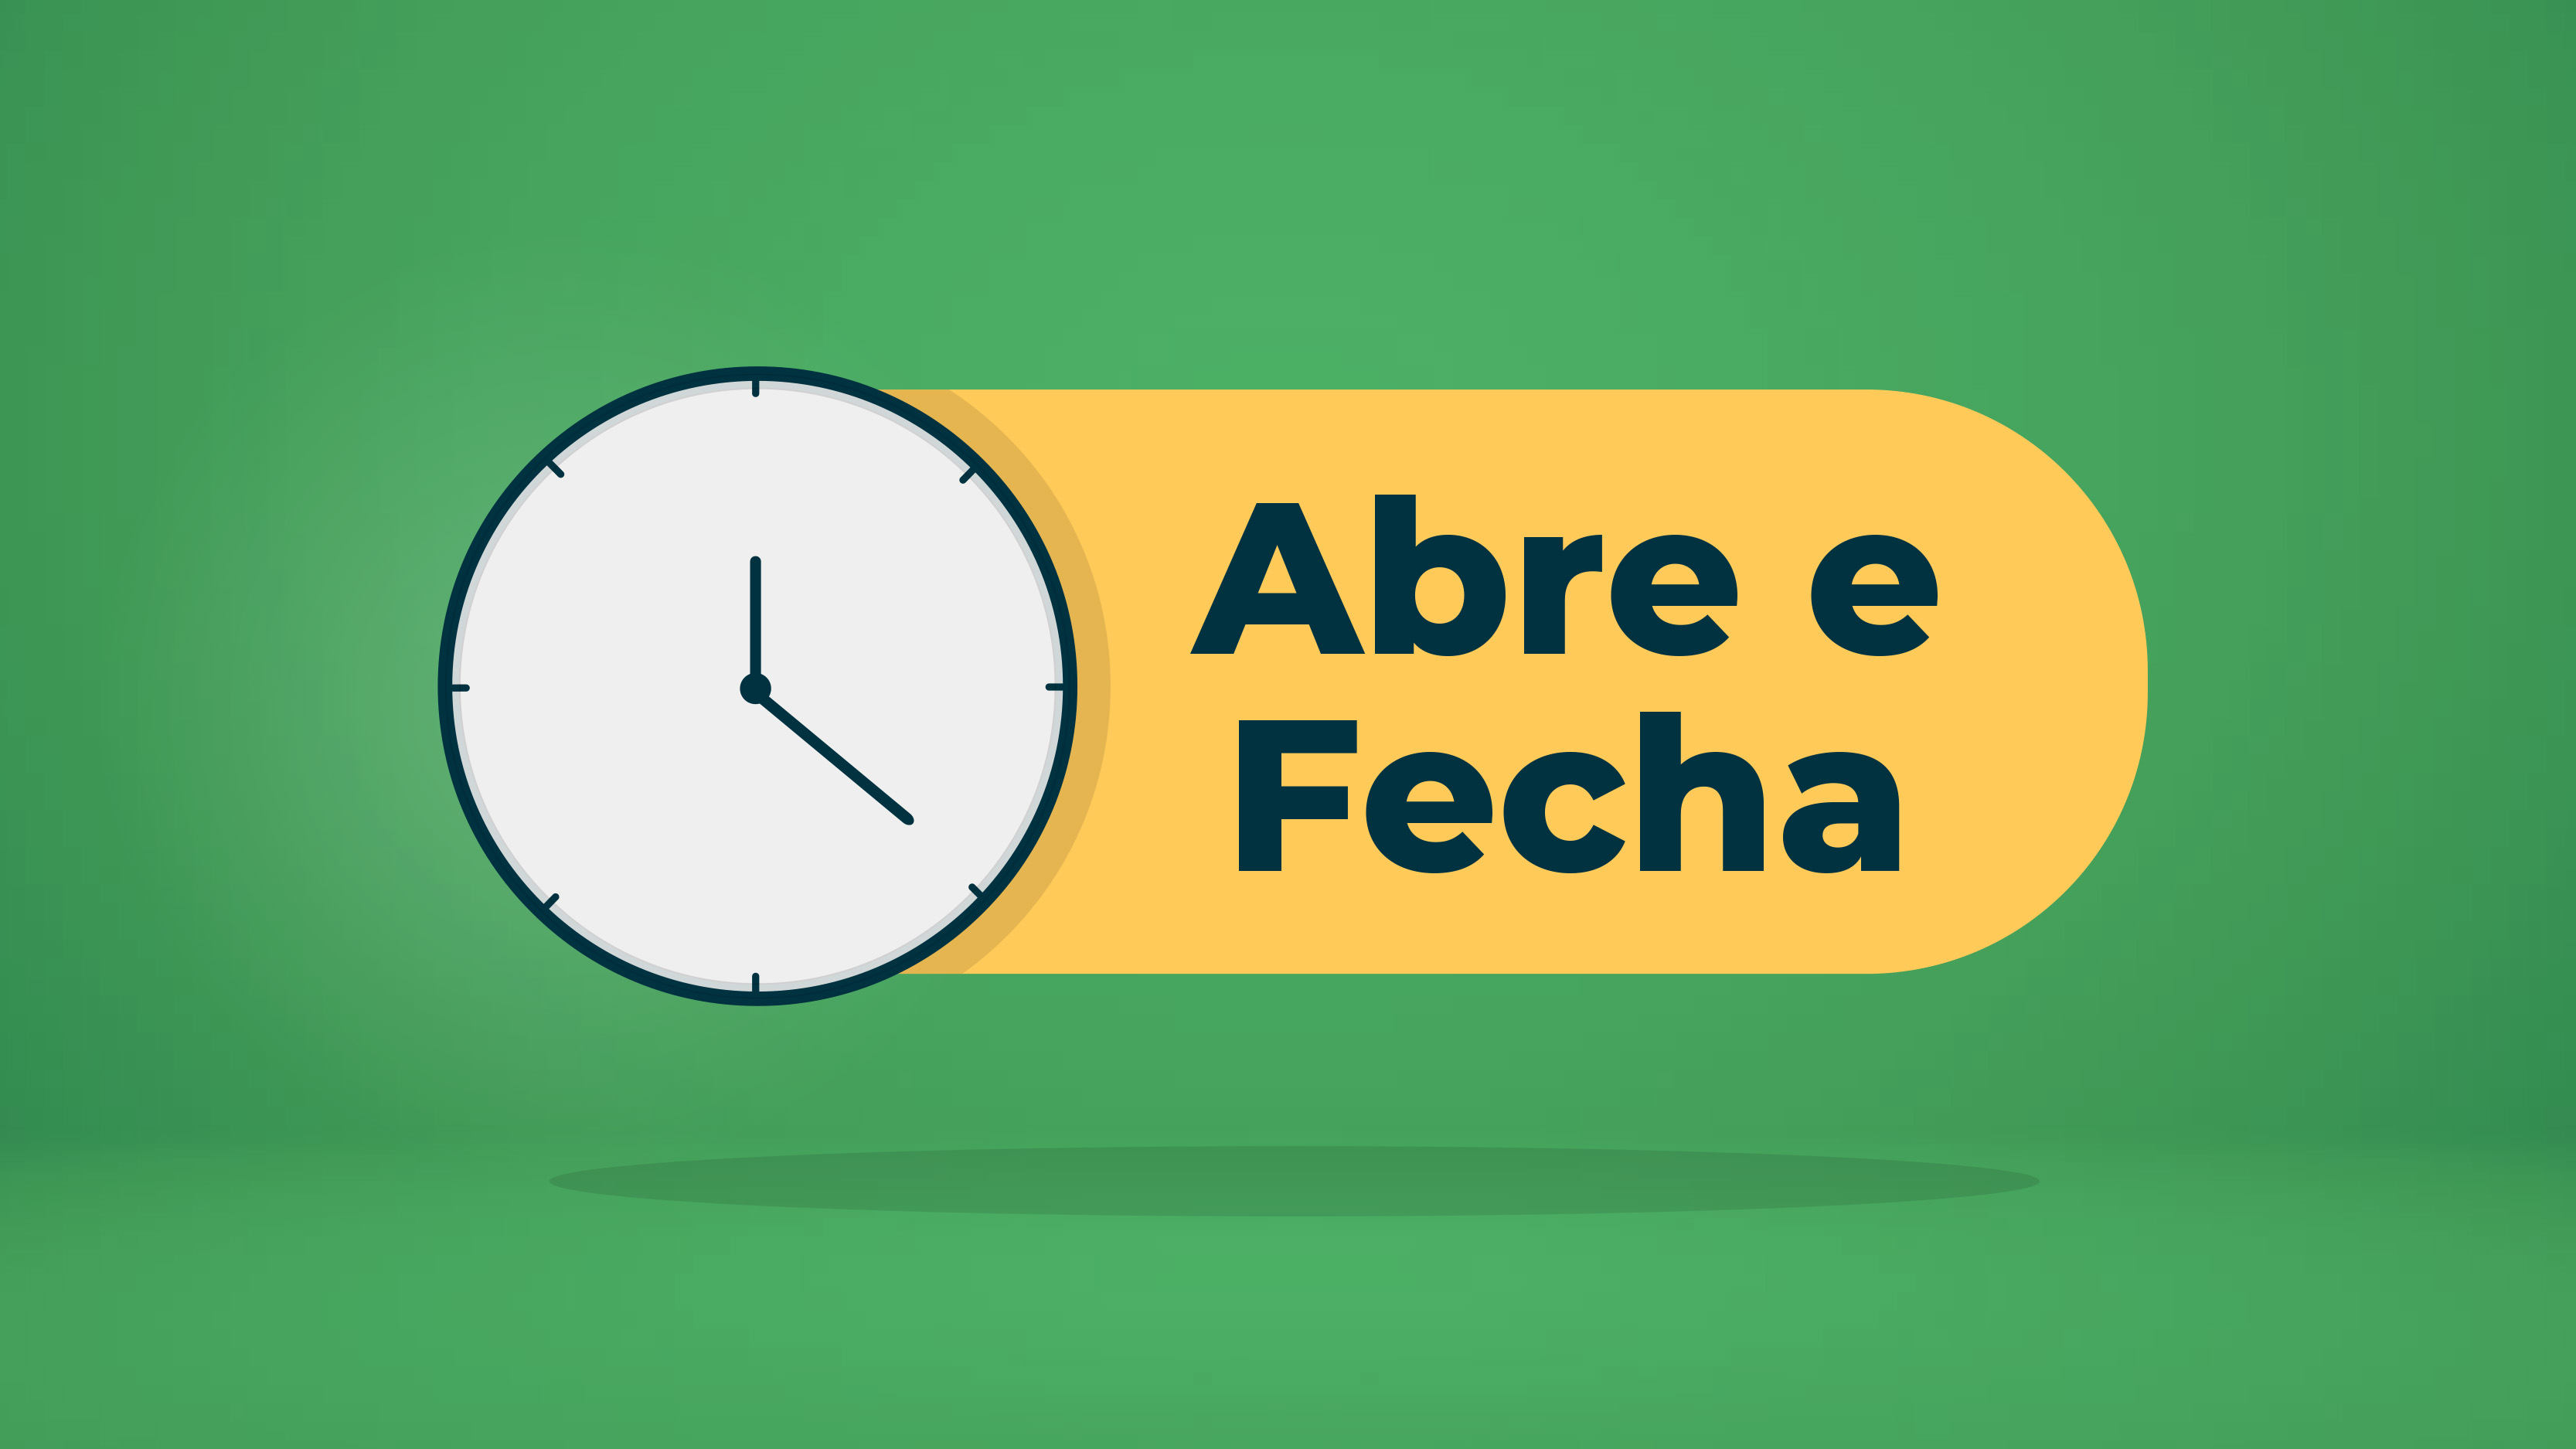 Comunicado 05/12- expediente no jogo do Brasil na Copa/2022, jogo copa 